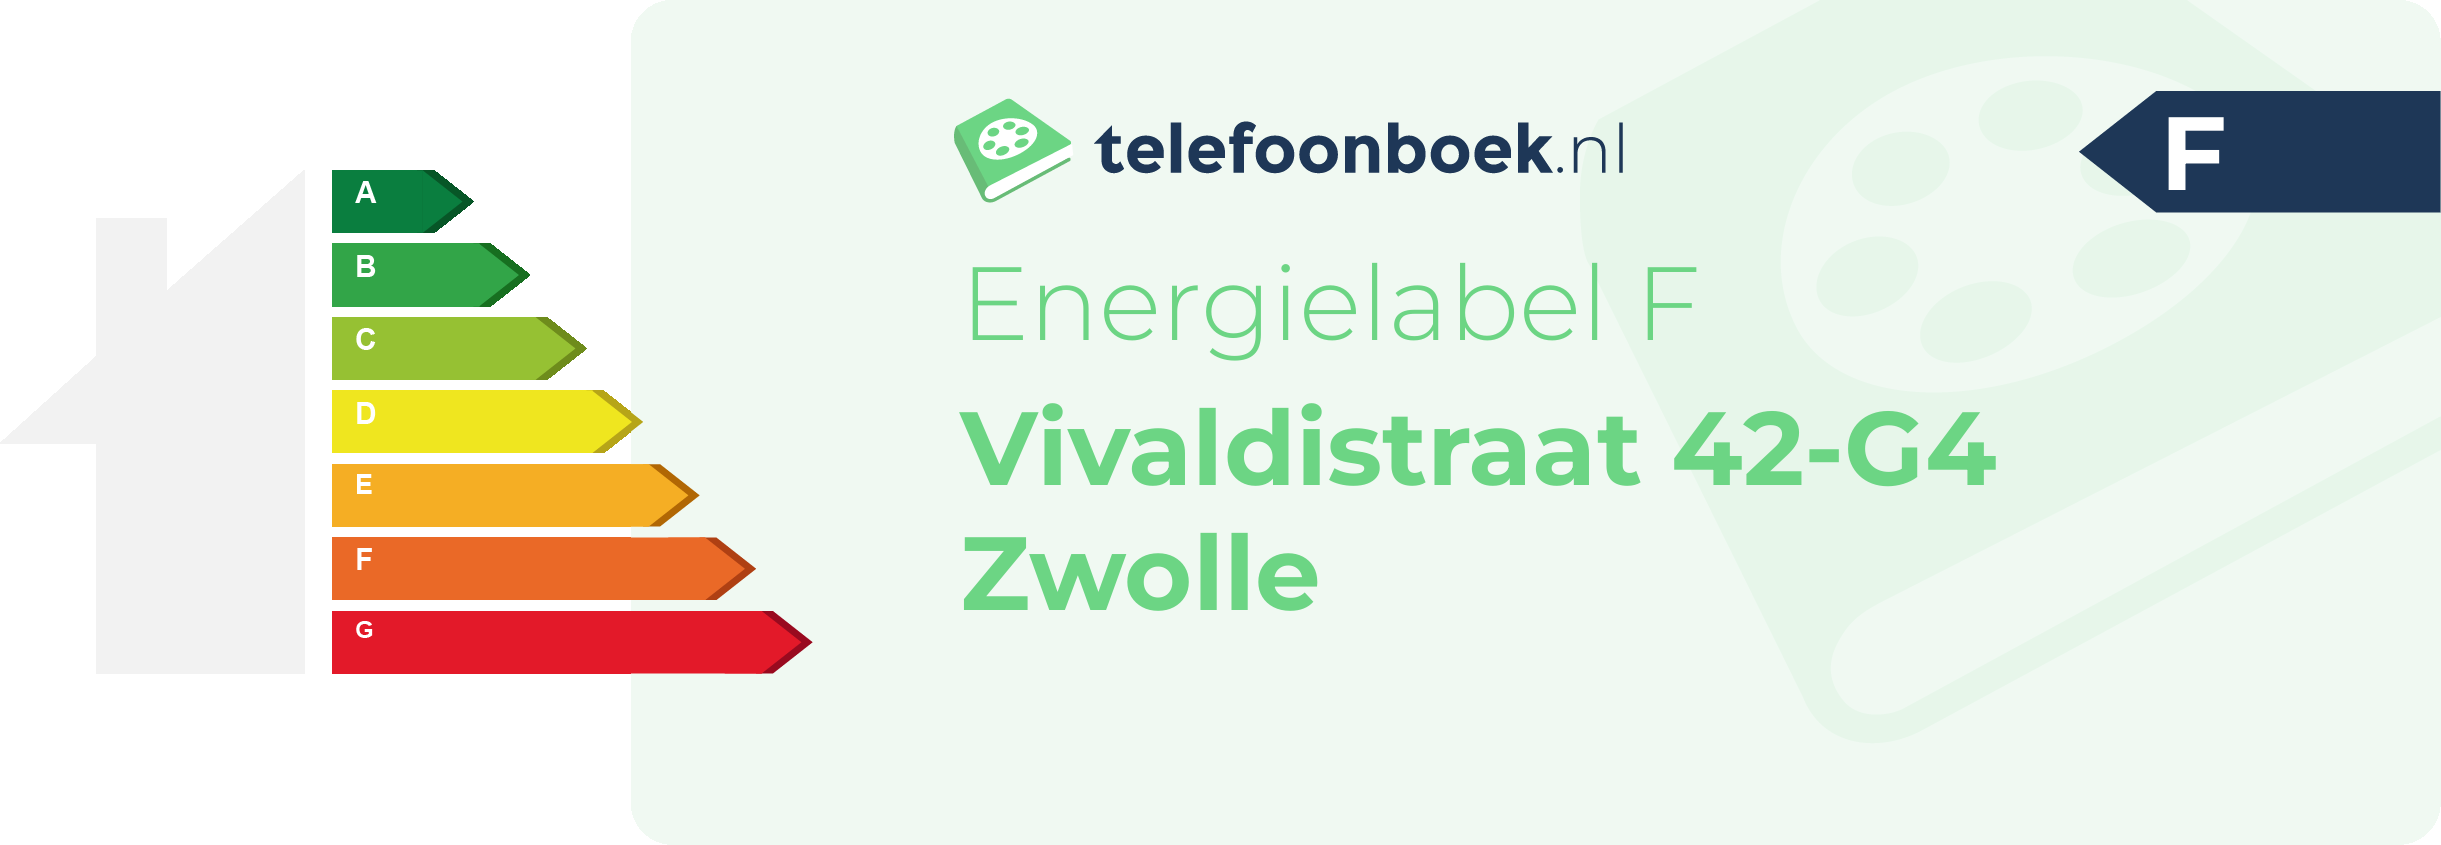 Energielabel Vivaldistraat 42-G4 Zwolle